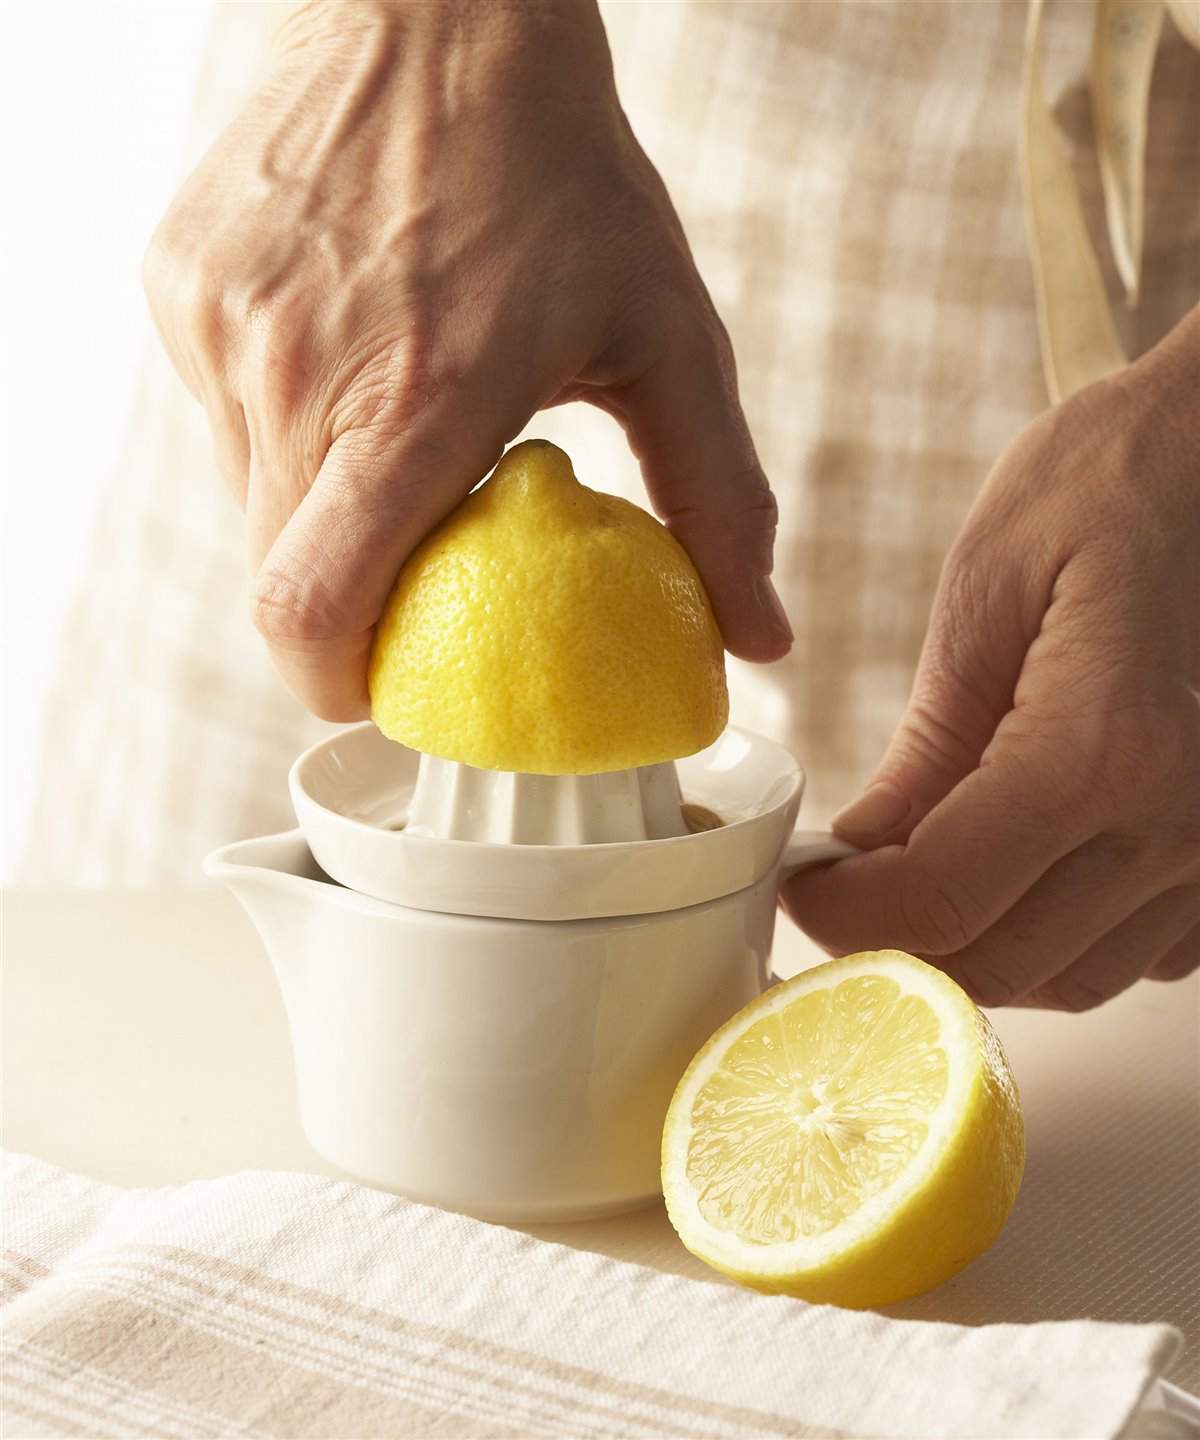 2. Exprime los limones